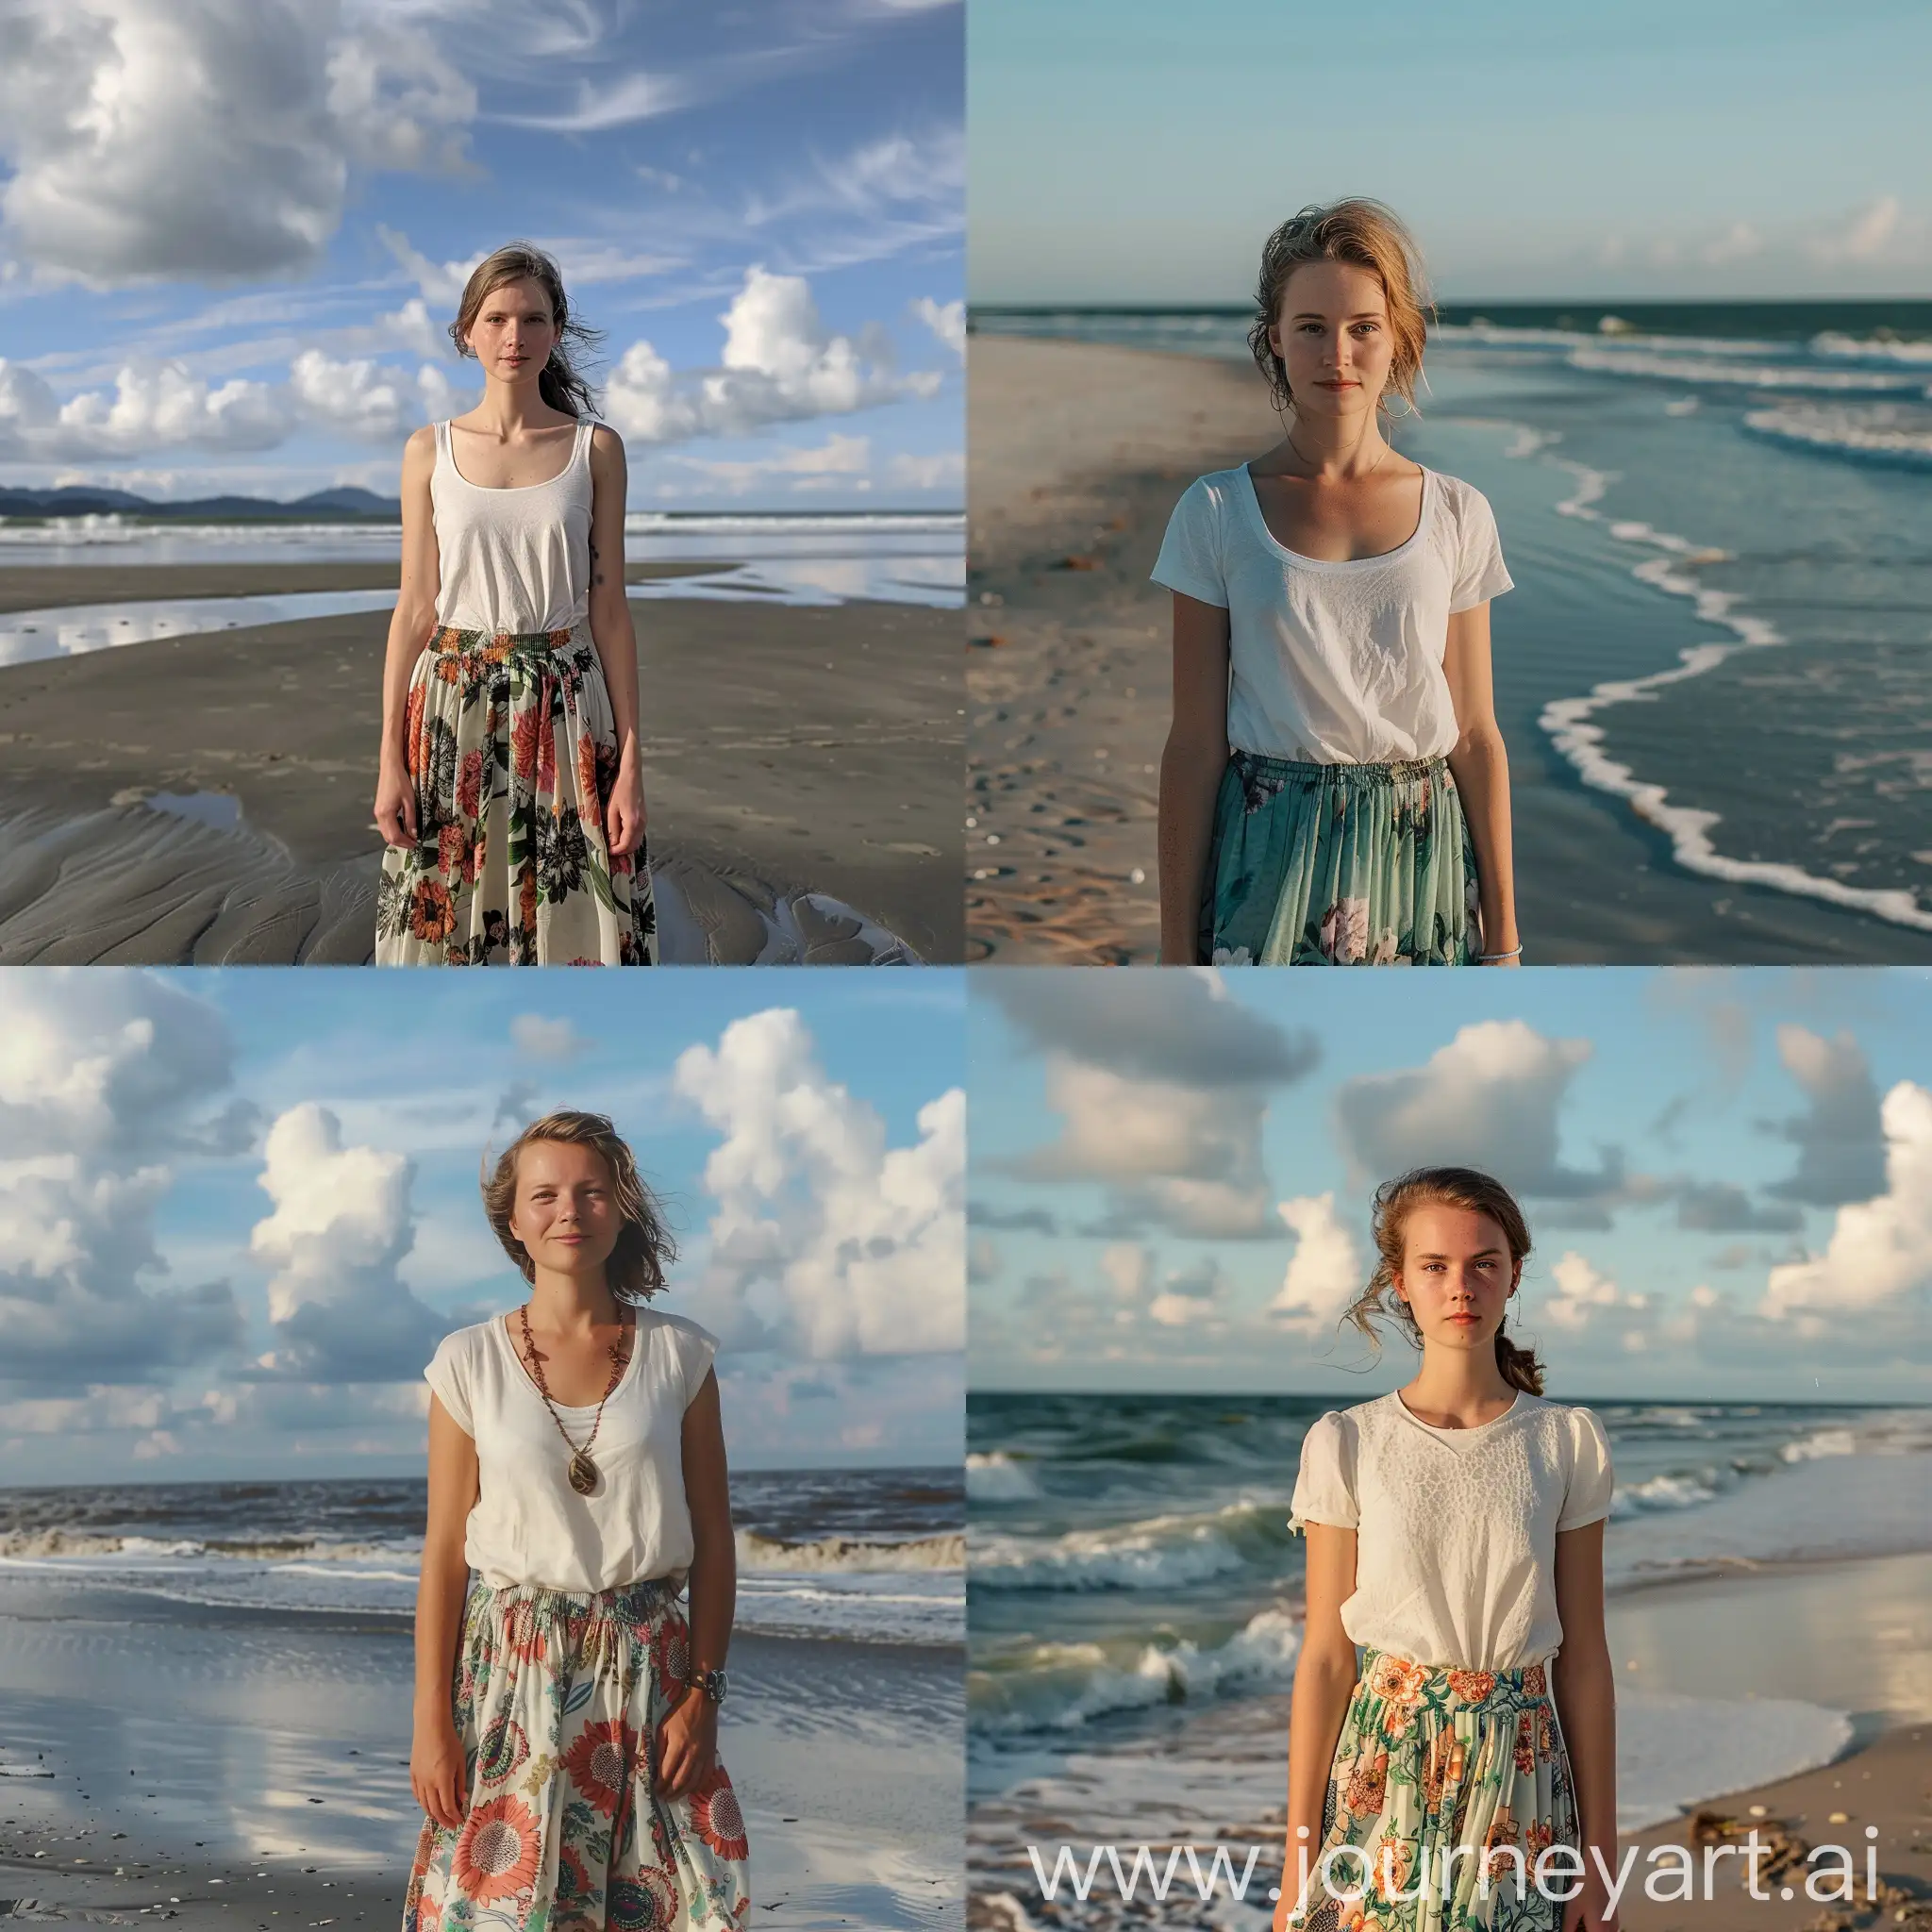 一个白人女孩穿着碎花短裙站在沙滩上